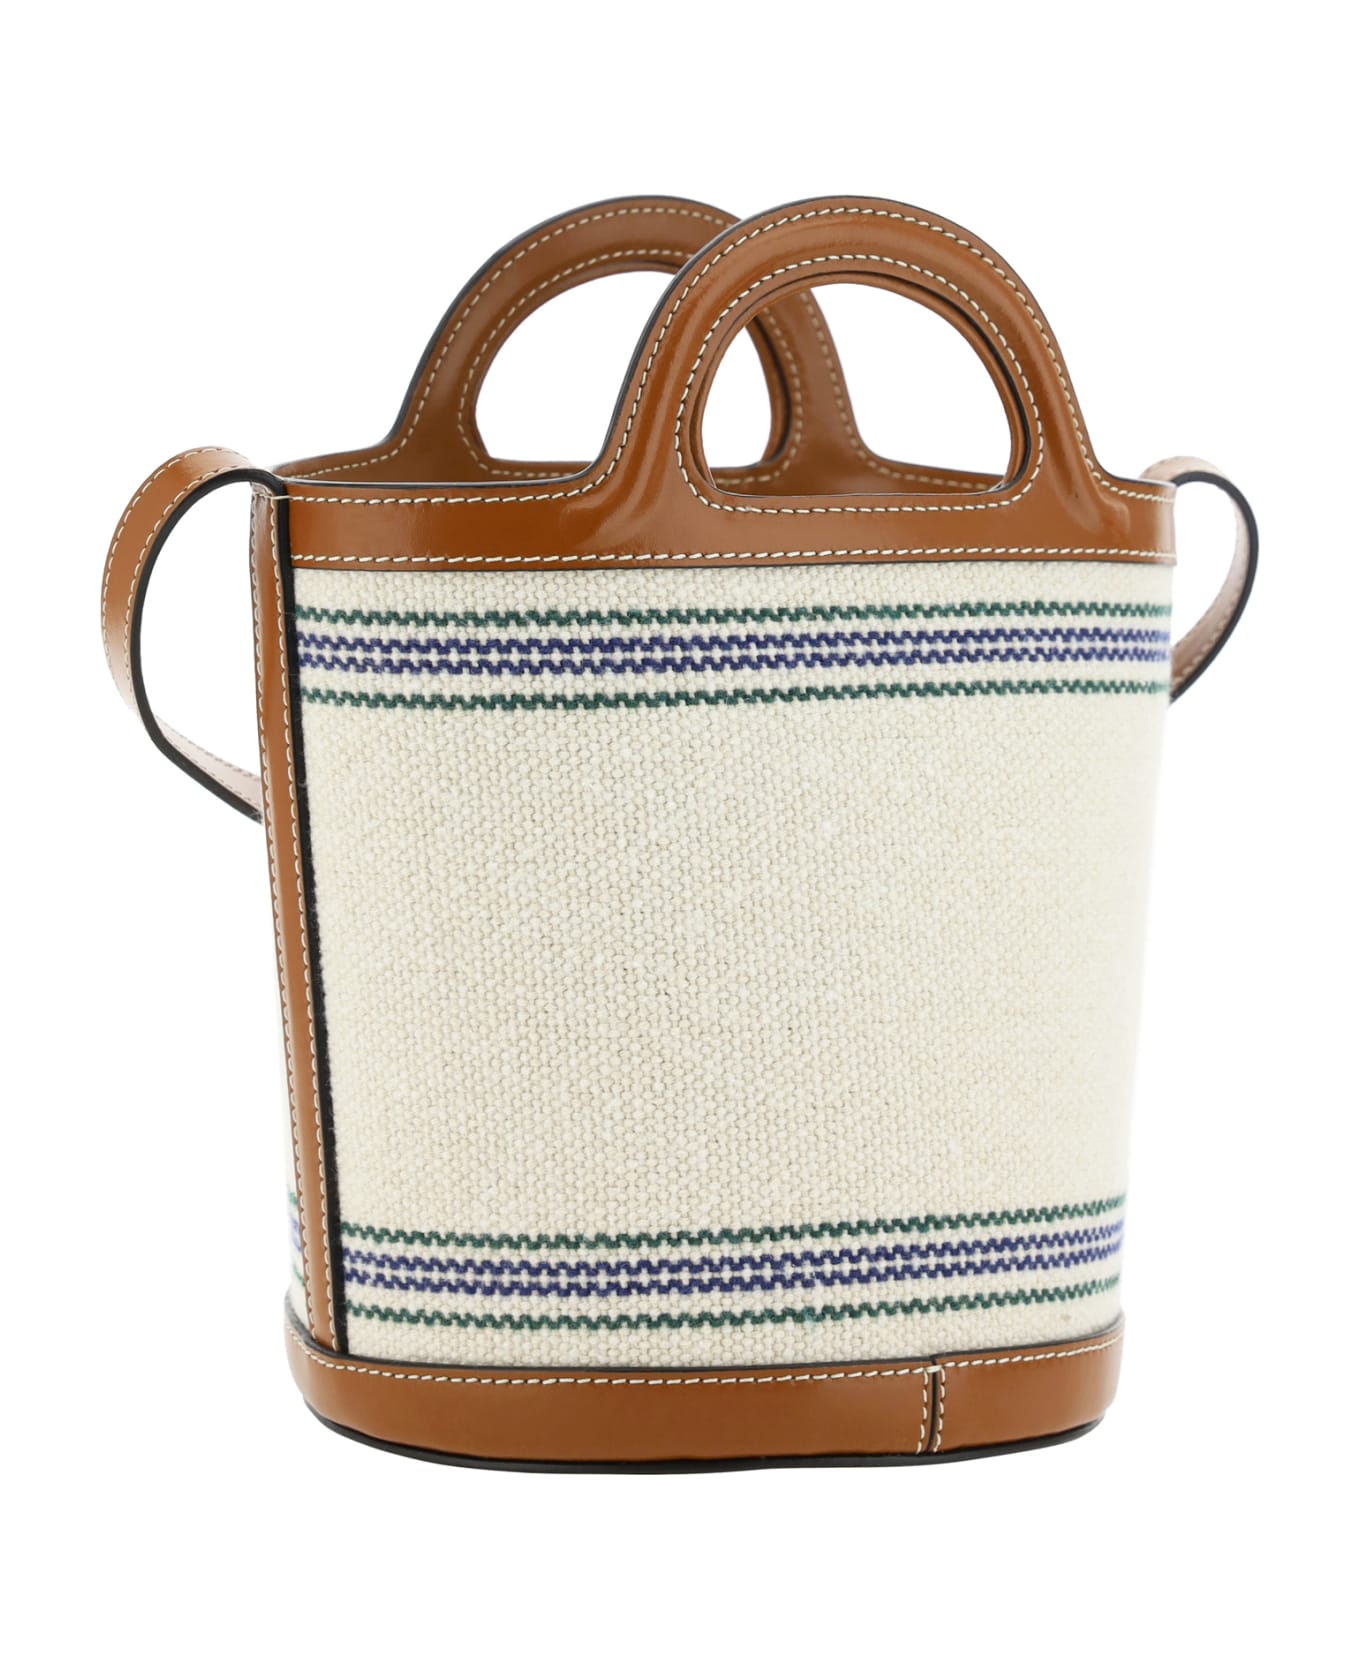 Marni Tropicalia Bucket Bag - Natural/moka